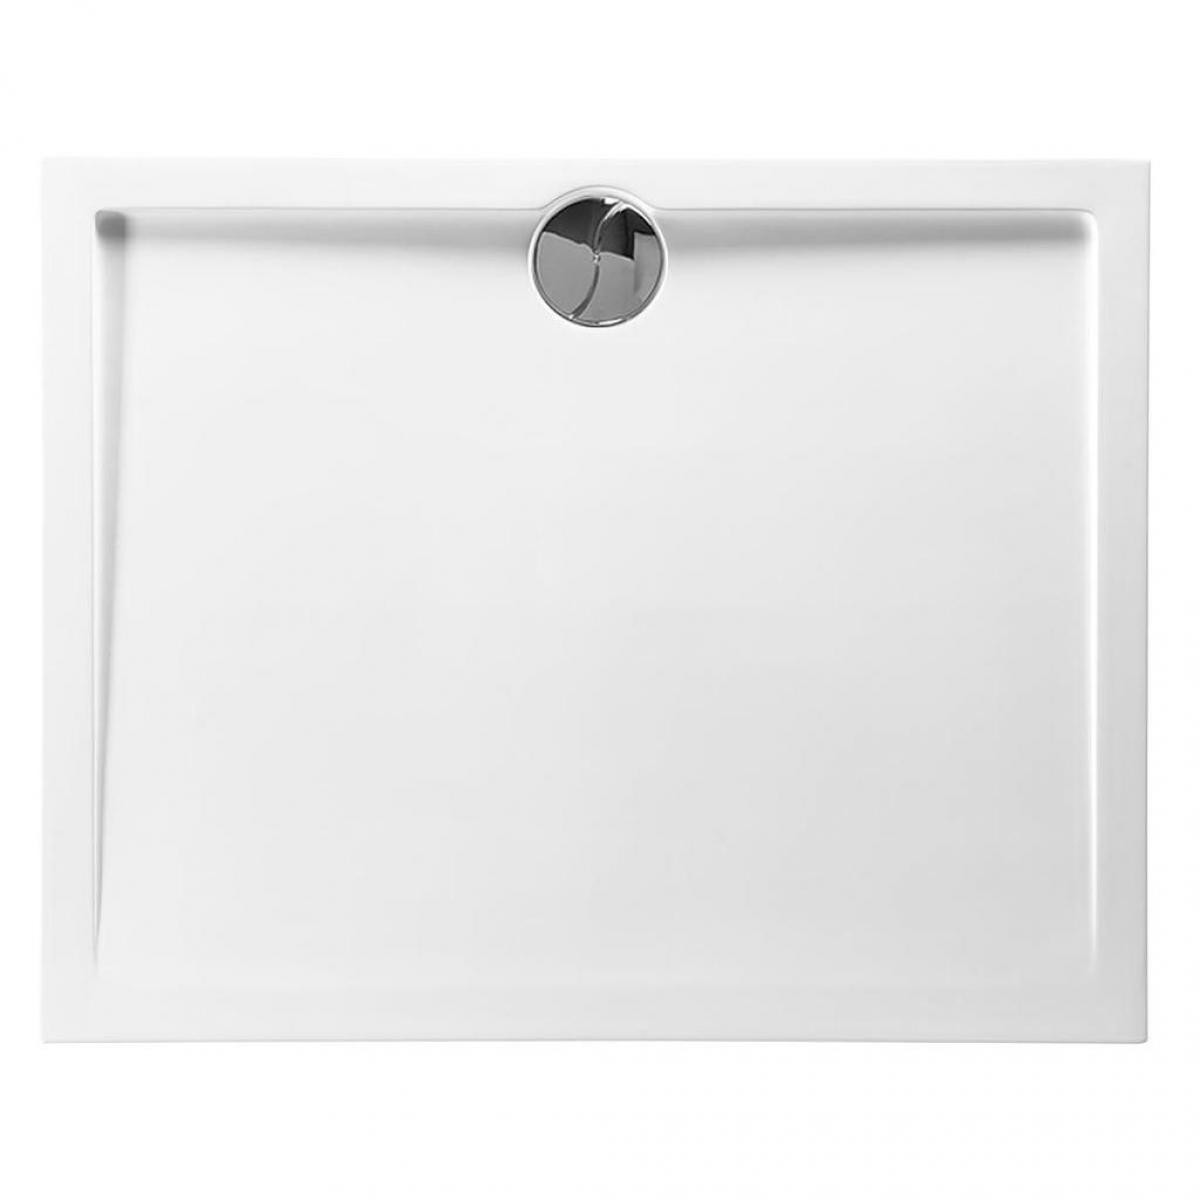 Allibert - ALLIBERT Receveur de douche Slim rectangle bonde centrée - 80 x 120 cm - Blanc - Receveur de douche